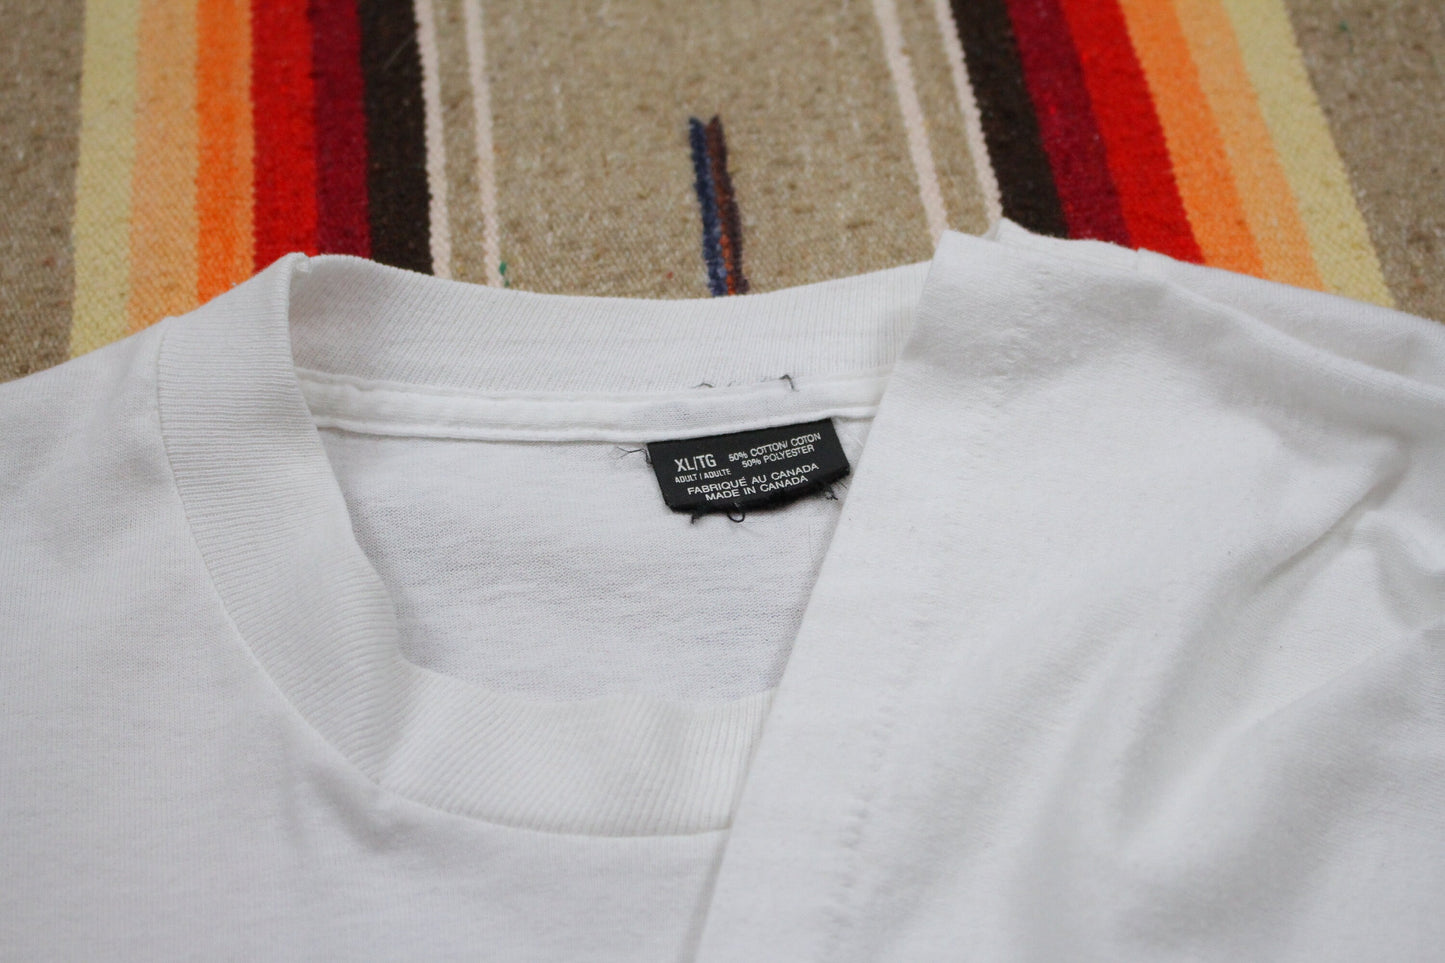 1990s Cuba Winter Picnic Souvenir Novelty T-Shirt Made in Canada T-Shirt Size XL